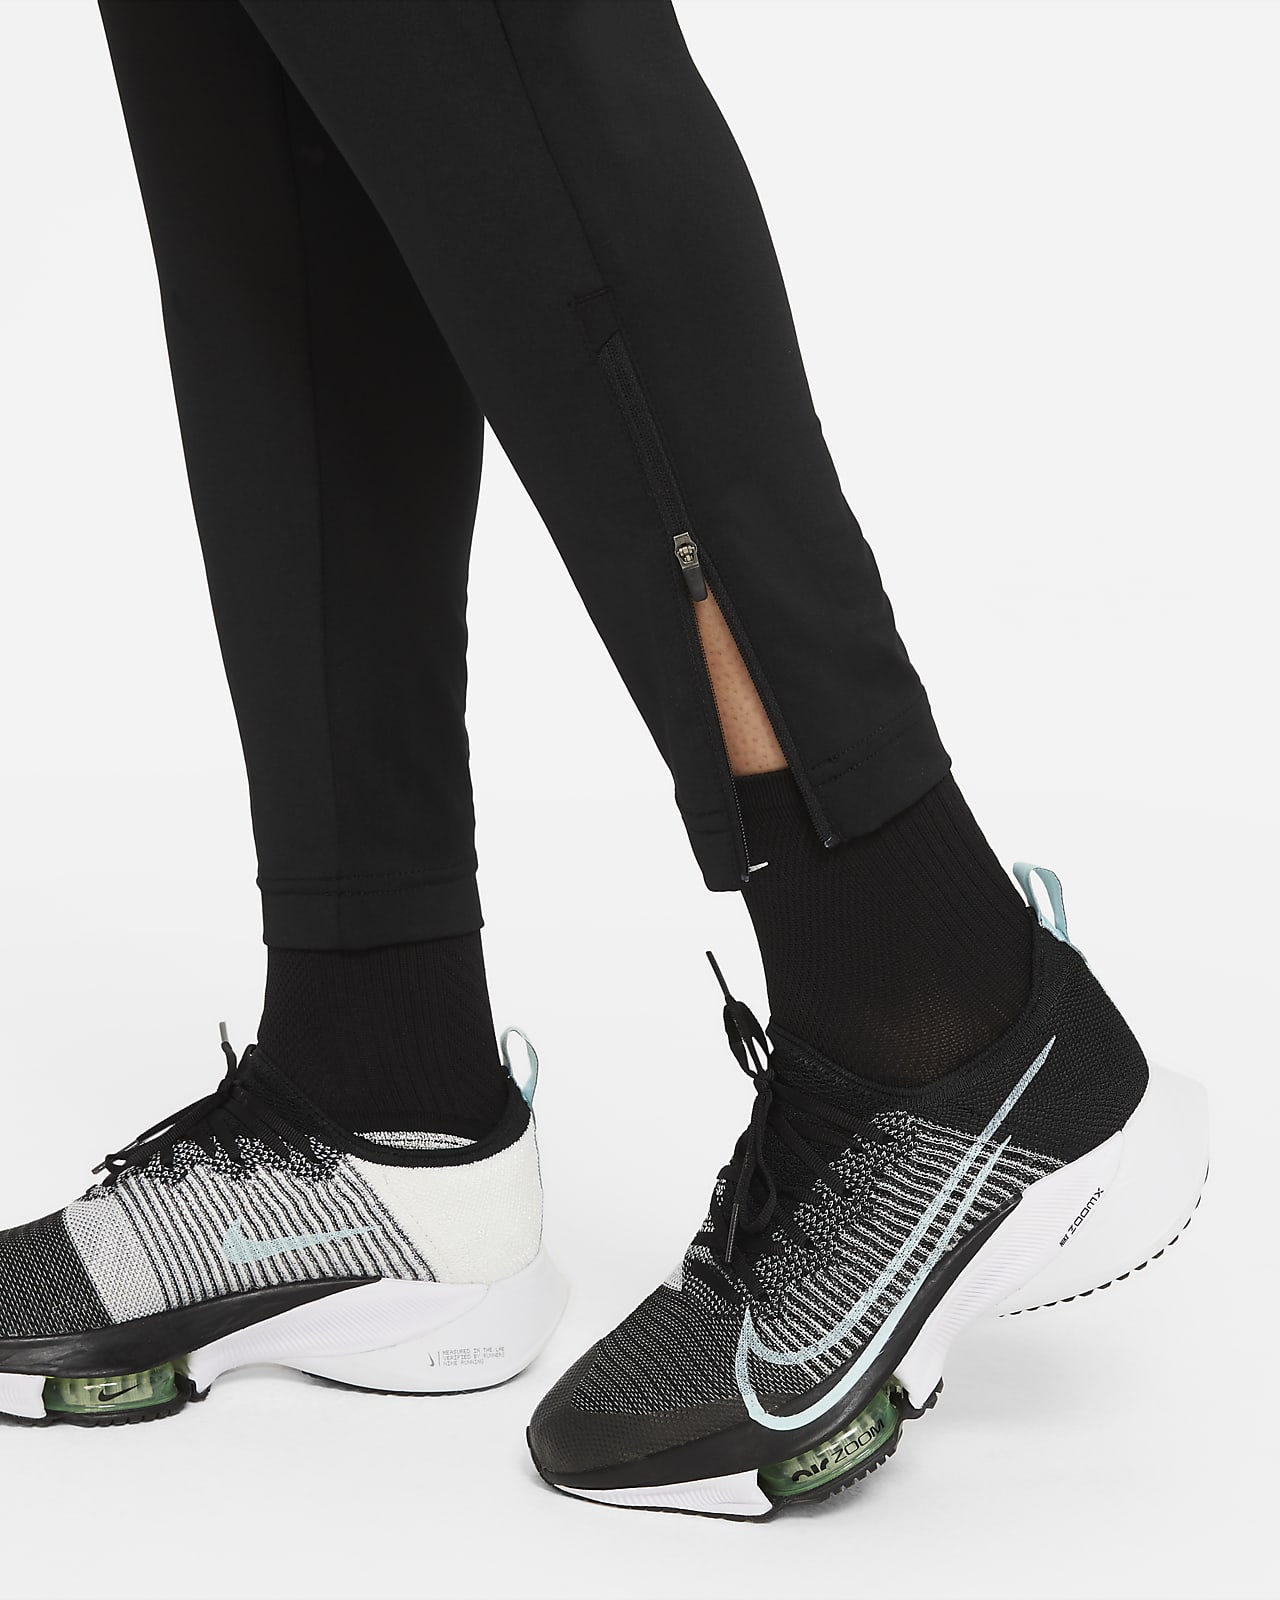 Pantalon survêtement Femme Nike Dri-FIT noir sur